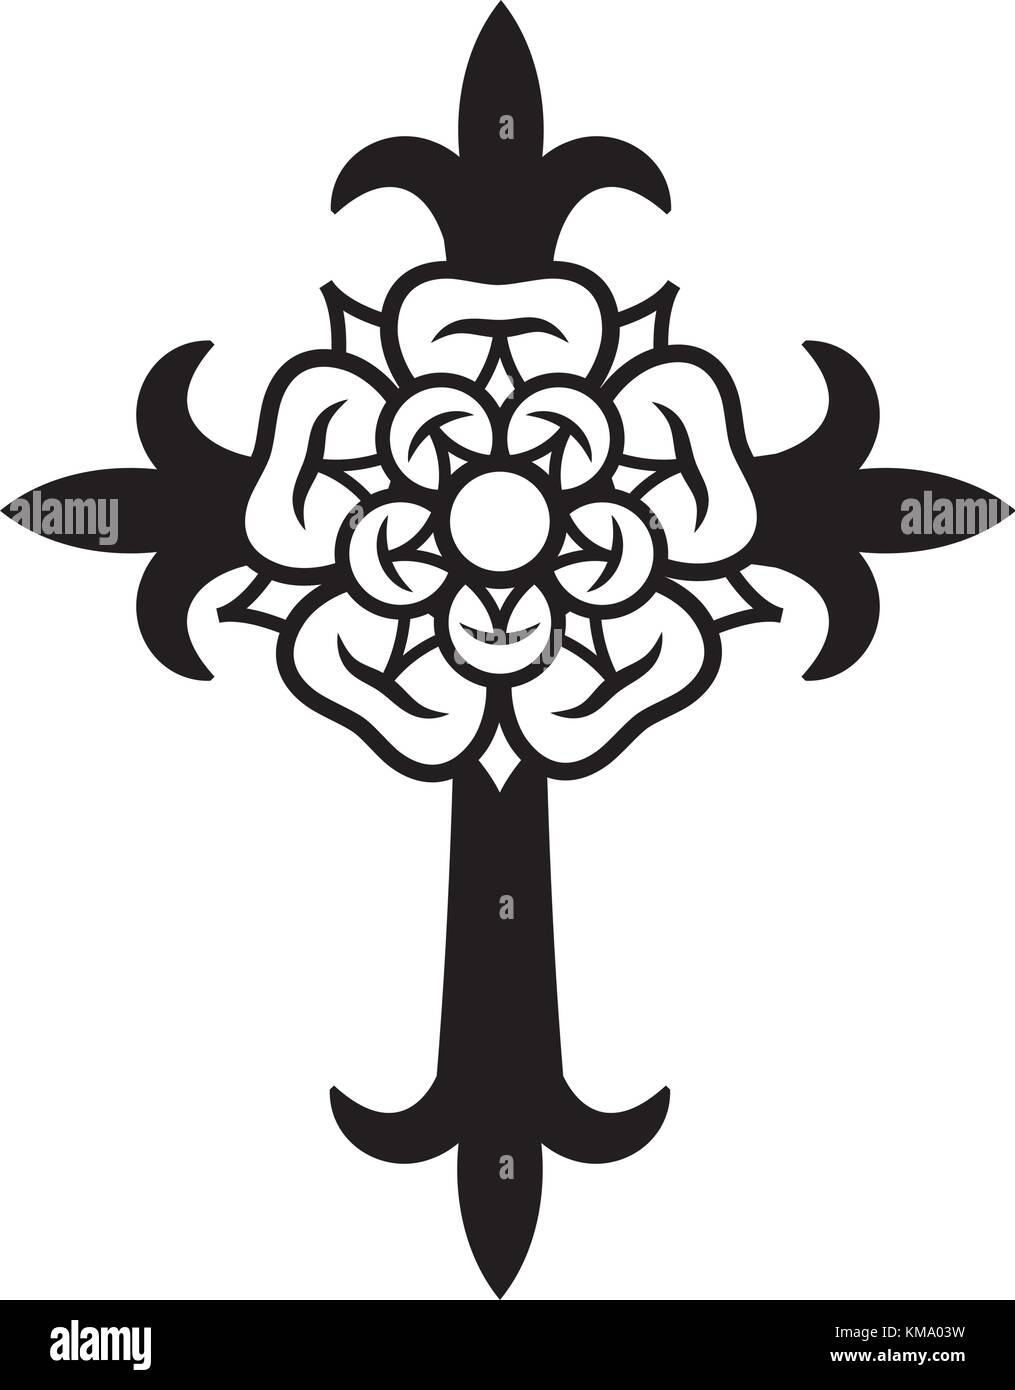 Rosenkreuz (Croce con Rosa). Simbolo mistico sacrale dei Rosicruciani (Rosenkreuzer), emblema della società segreta medievale. Illustrazione Vettoriale